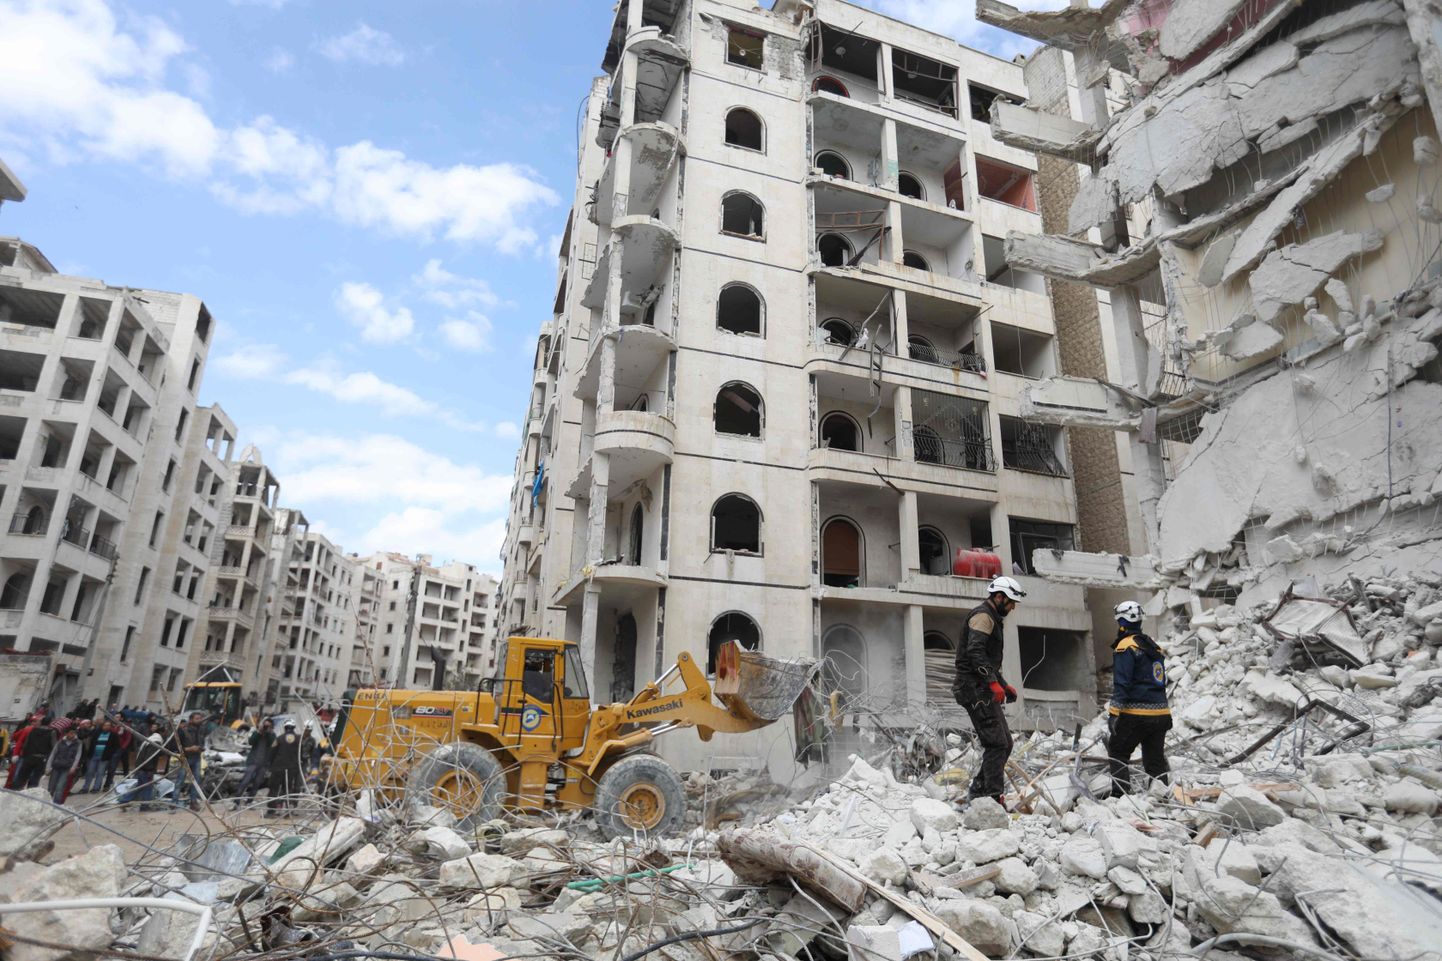 Purustatud hoone Idlibis.